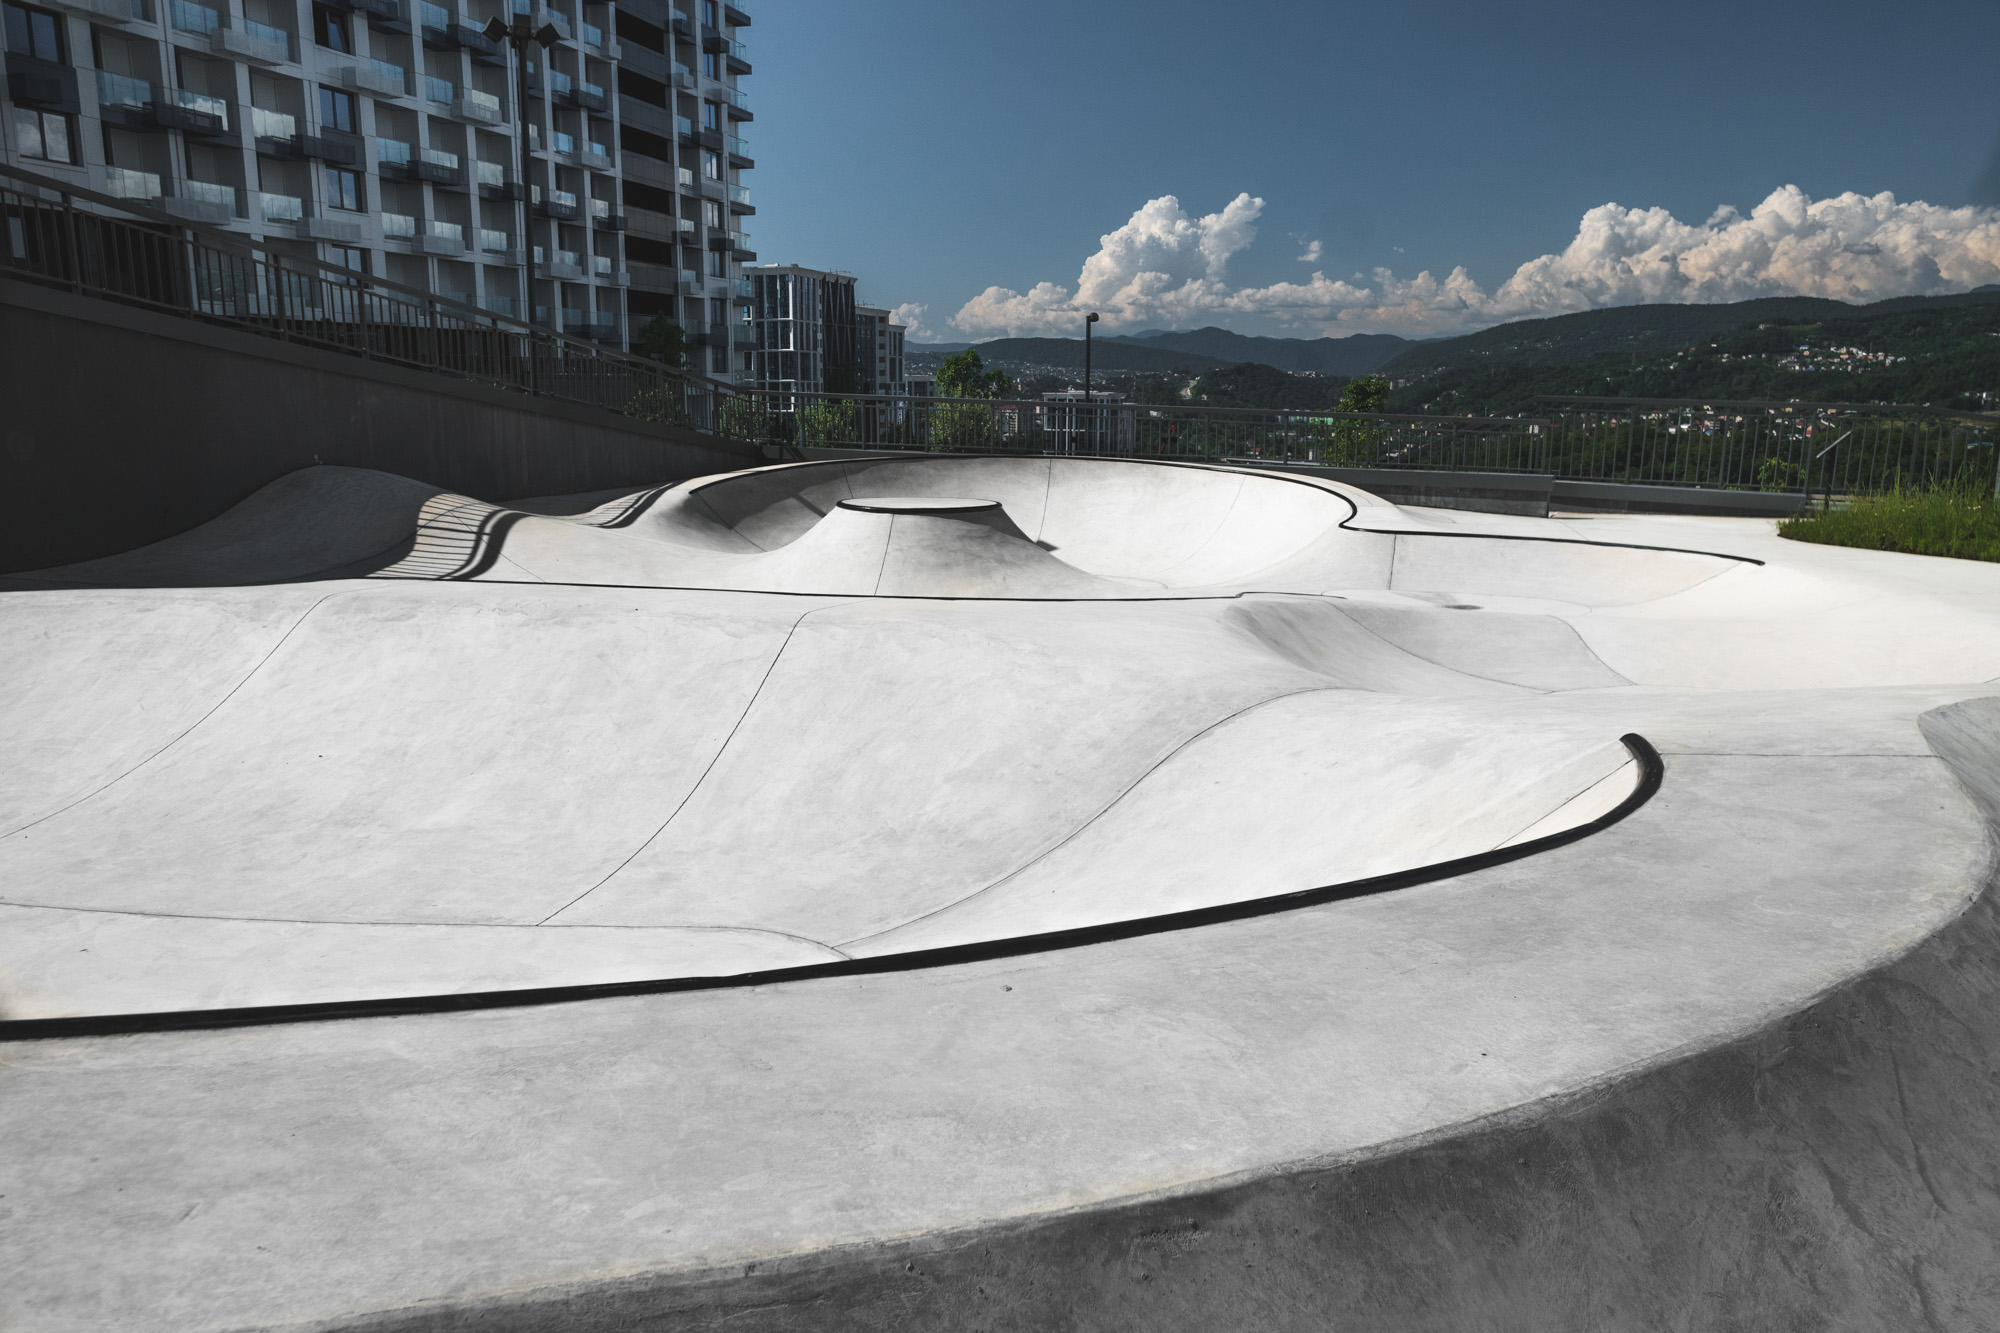 бетонные волны нового скейт-парка в Сочи от команды XSA